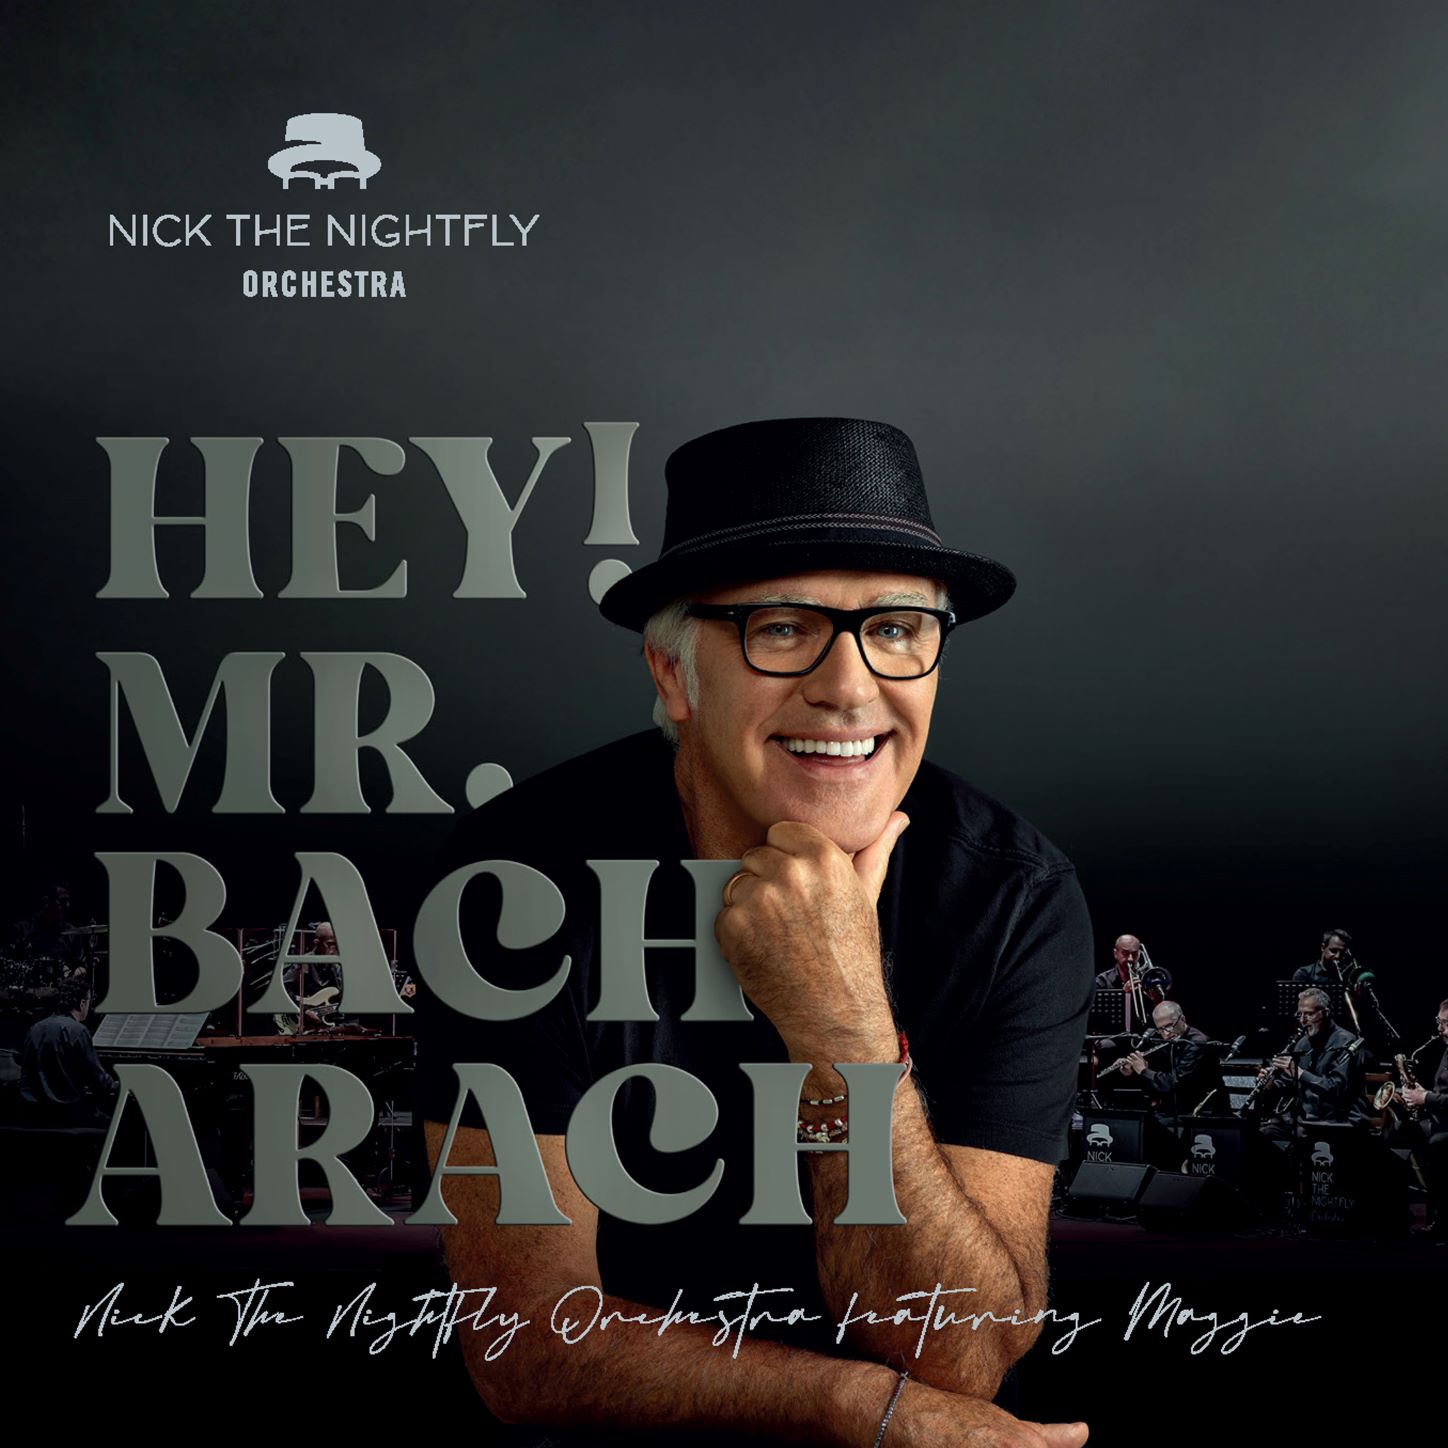 Nck The Nightfly - "Hey! Mr. Bacharach"